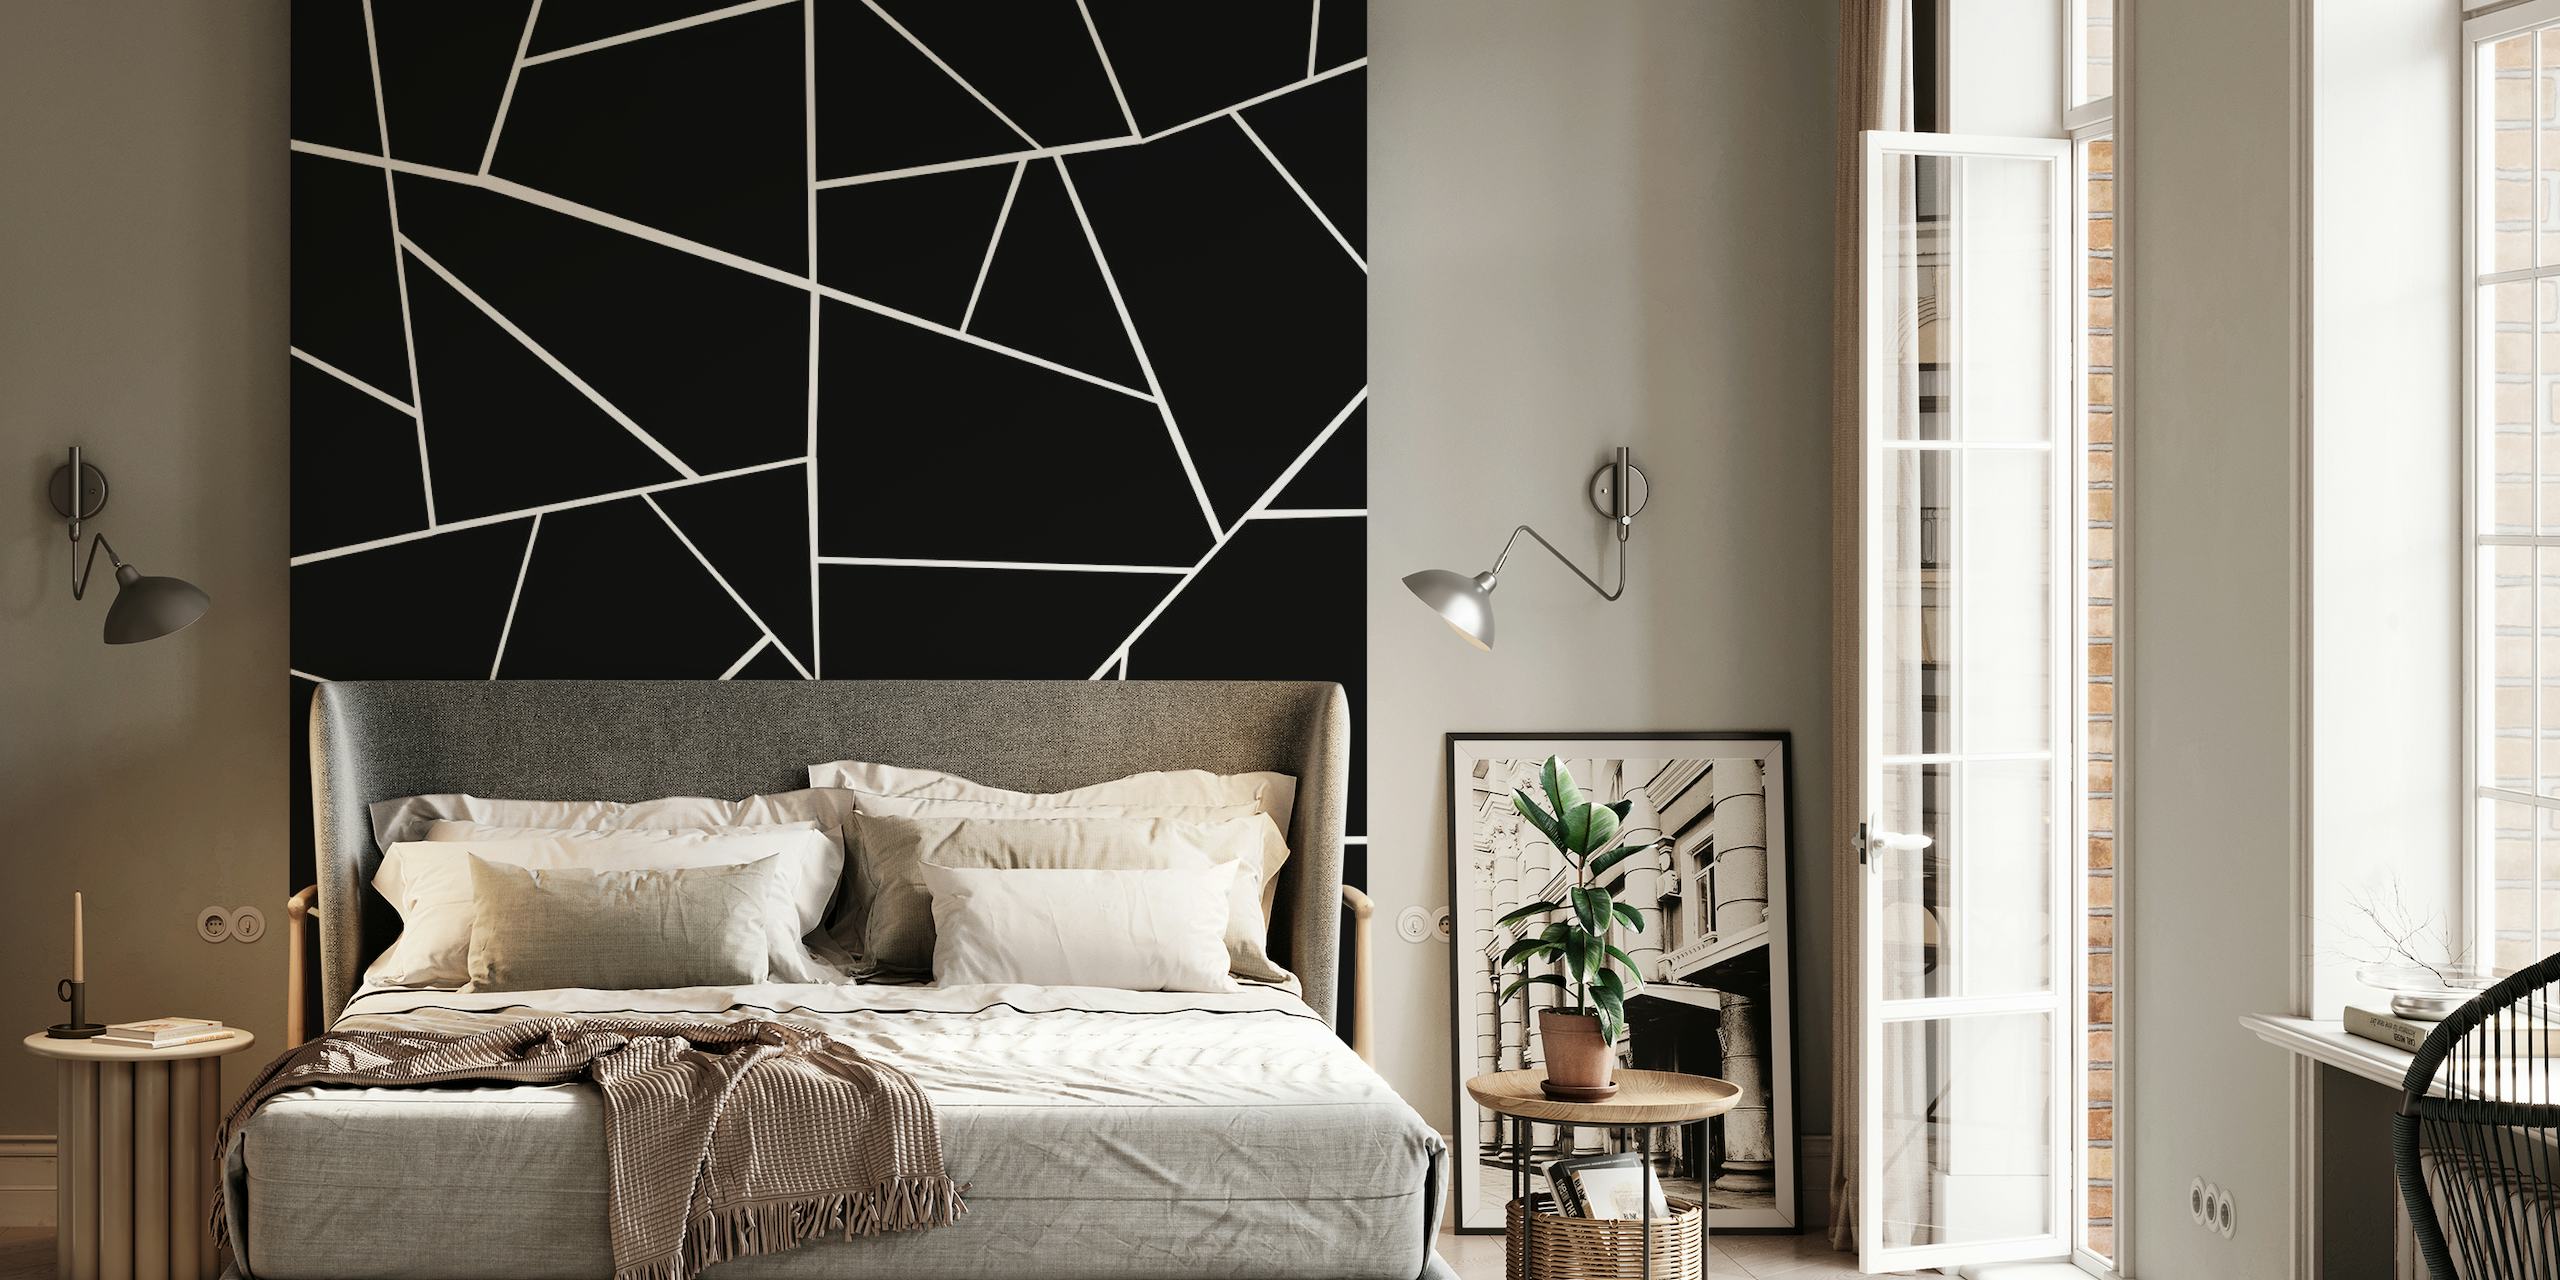 Schwarz-weißes Wandbild mit geometrischem Muster und scharfen Linien und Winkeln für einen modernen Look.